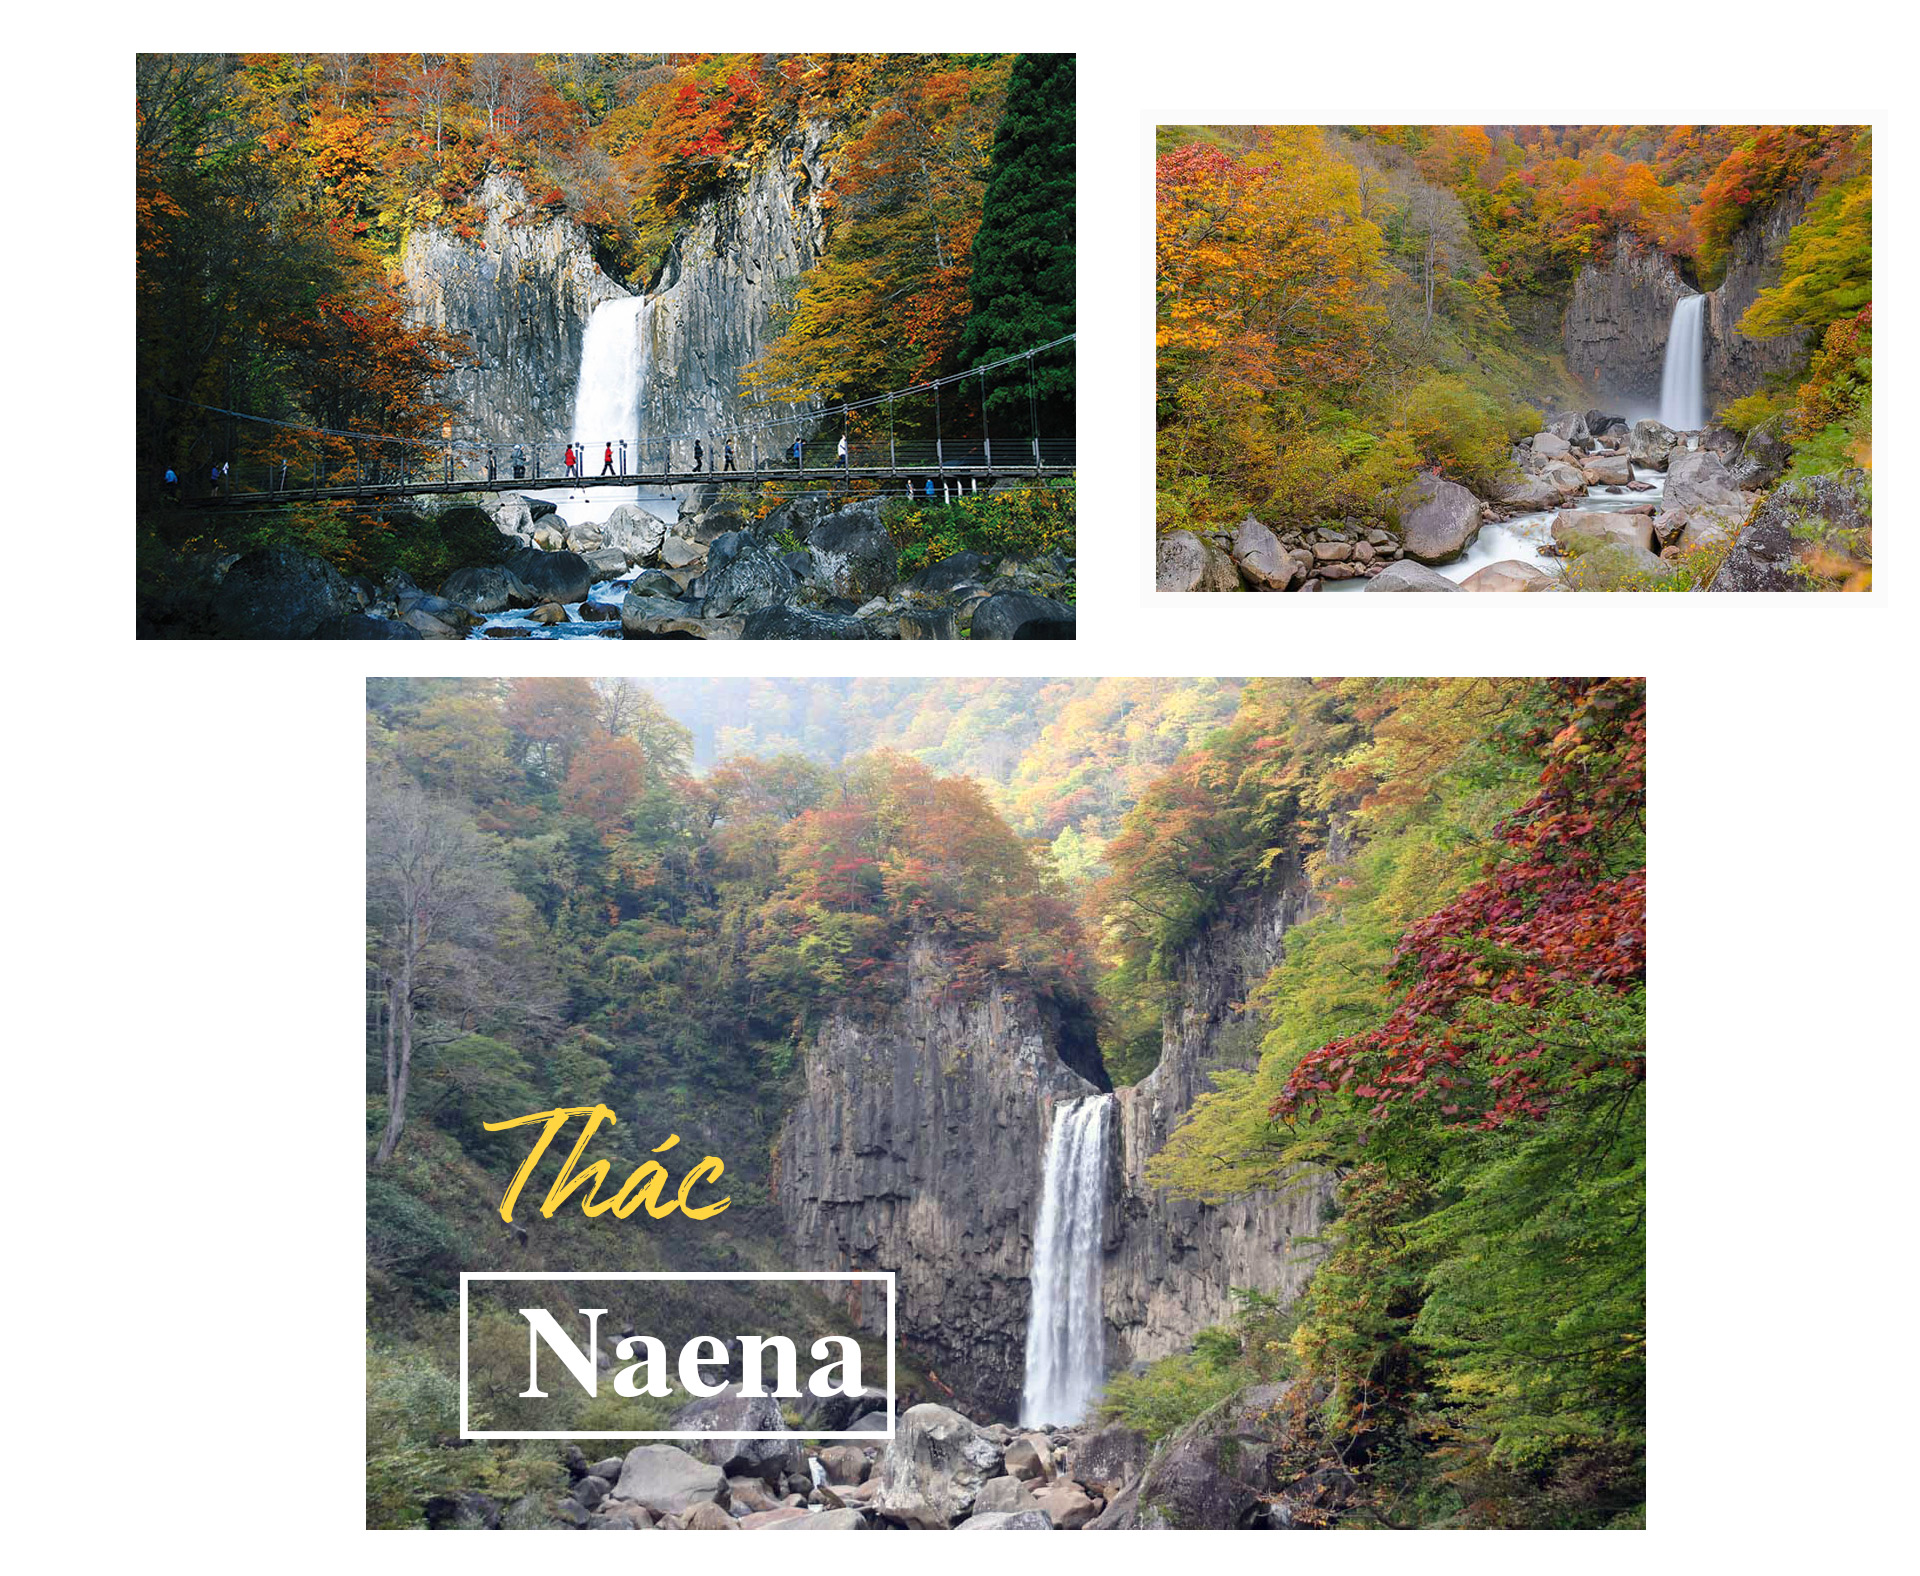 Chiêm ngưỡng những thác nước đẹp nhất Nhật Bản - 6